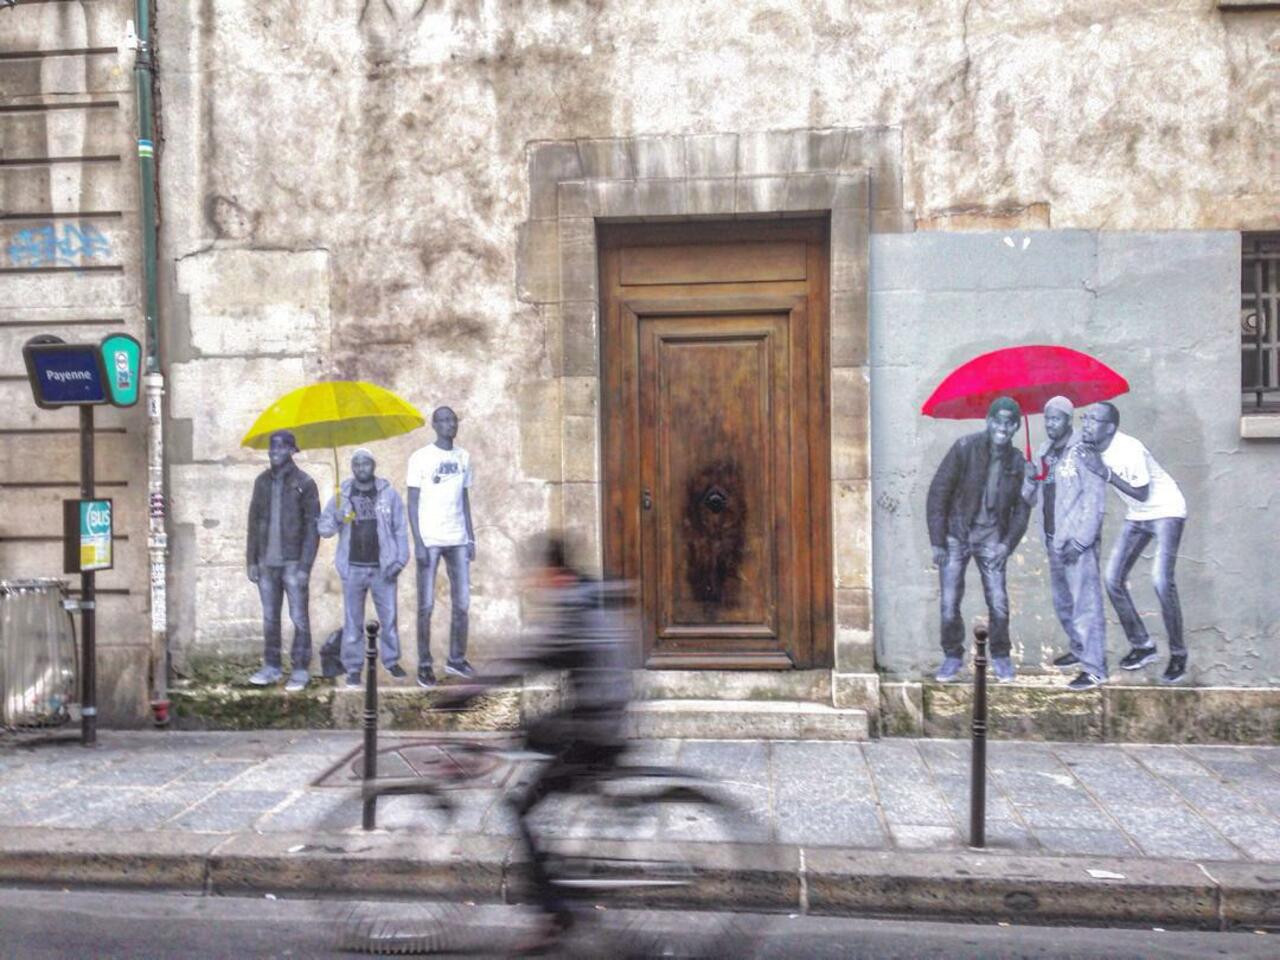 #Paris #graffiti photo by @joecoolpix http://ift.tt/1WWg9D9 #StreetArt http://t.co/yh4mjaJa34